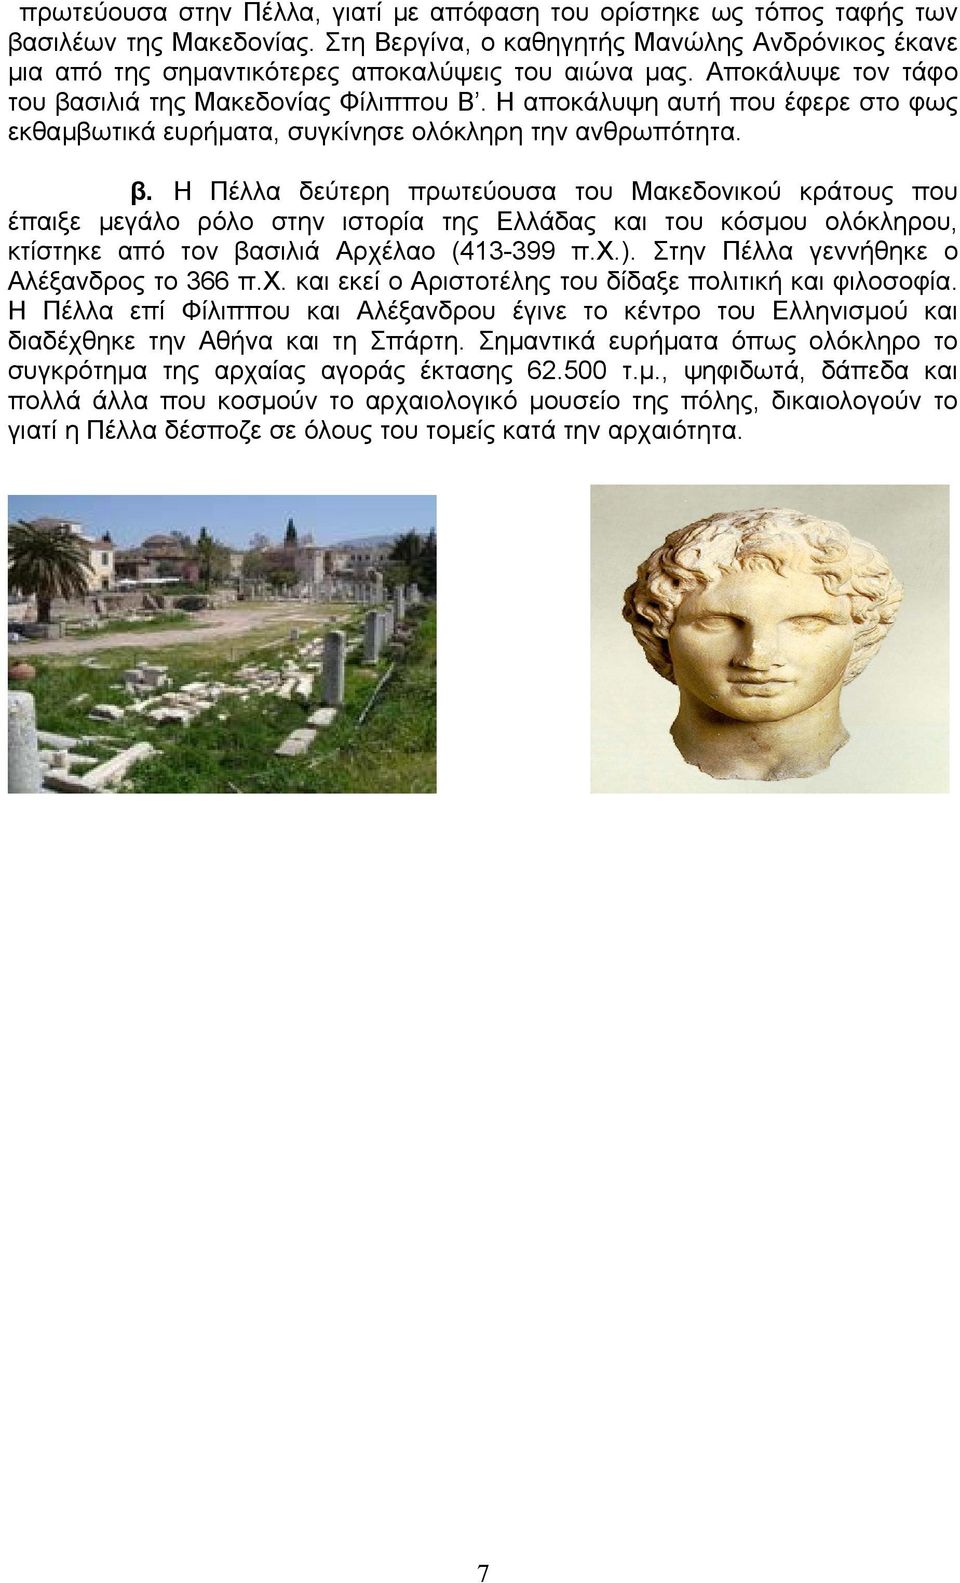 χ.). Στην Πέλλα γεννήθηκε ο Αλέξανδρος το 366 π.χ. και εκεί ο Αριστοτέλης του δίδαξε πολιτική και φιλοσοφία.